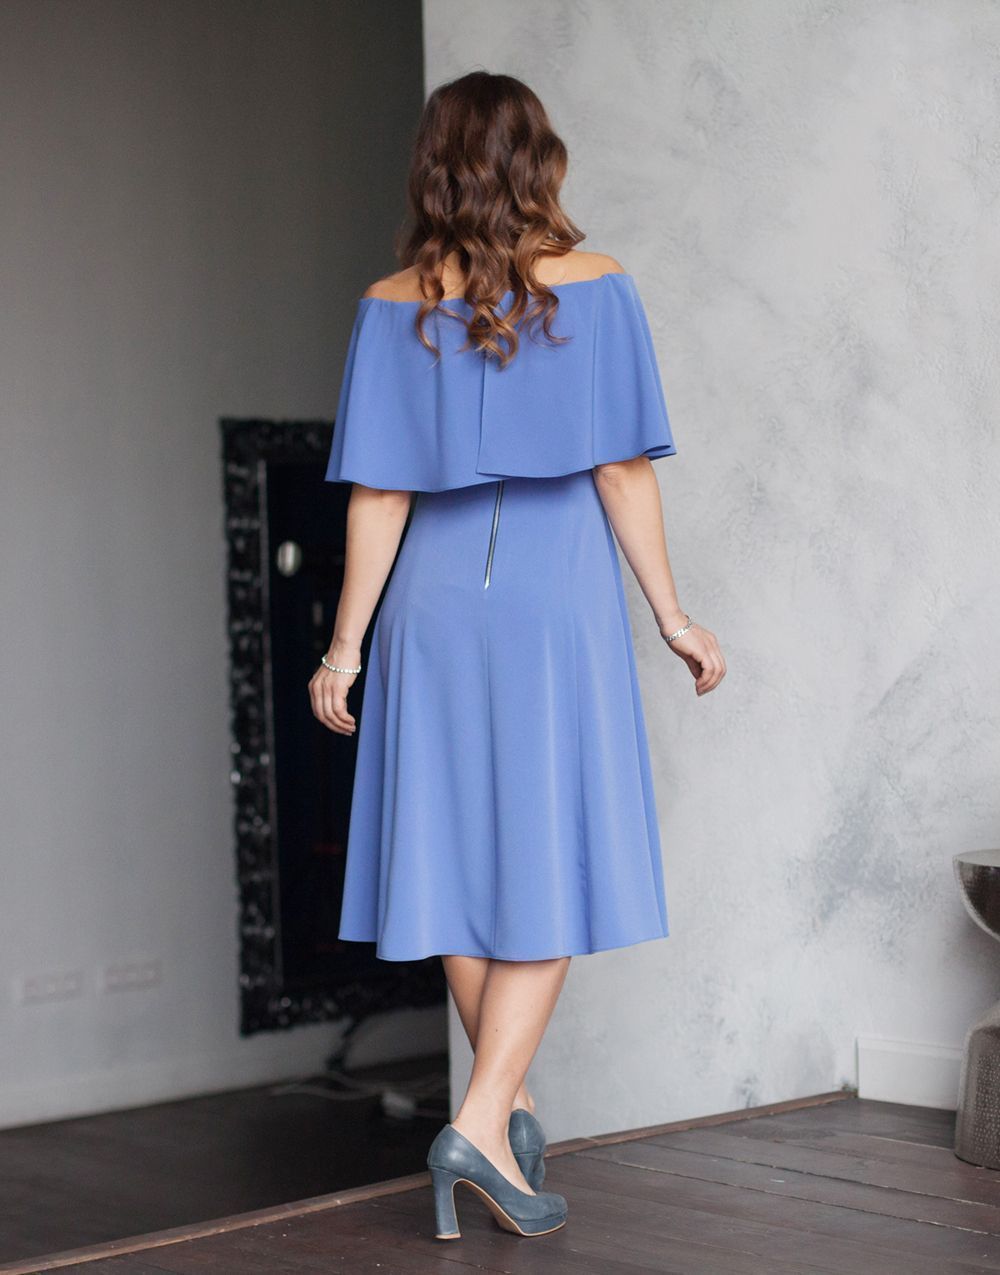 Dress, Pattern №555 buy on-line